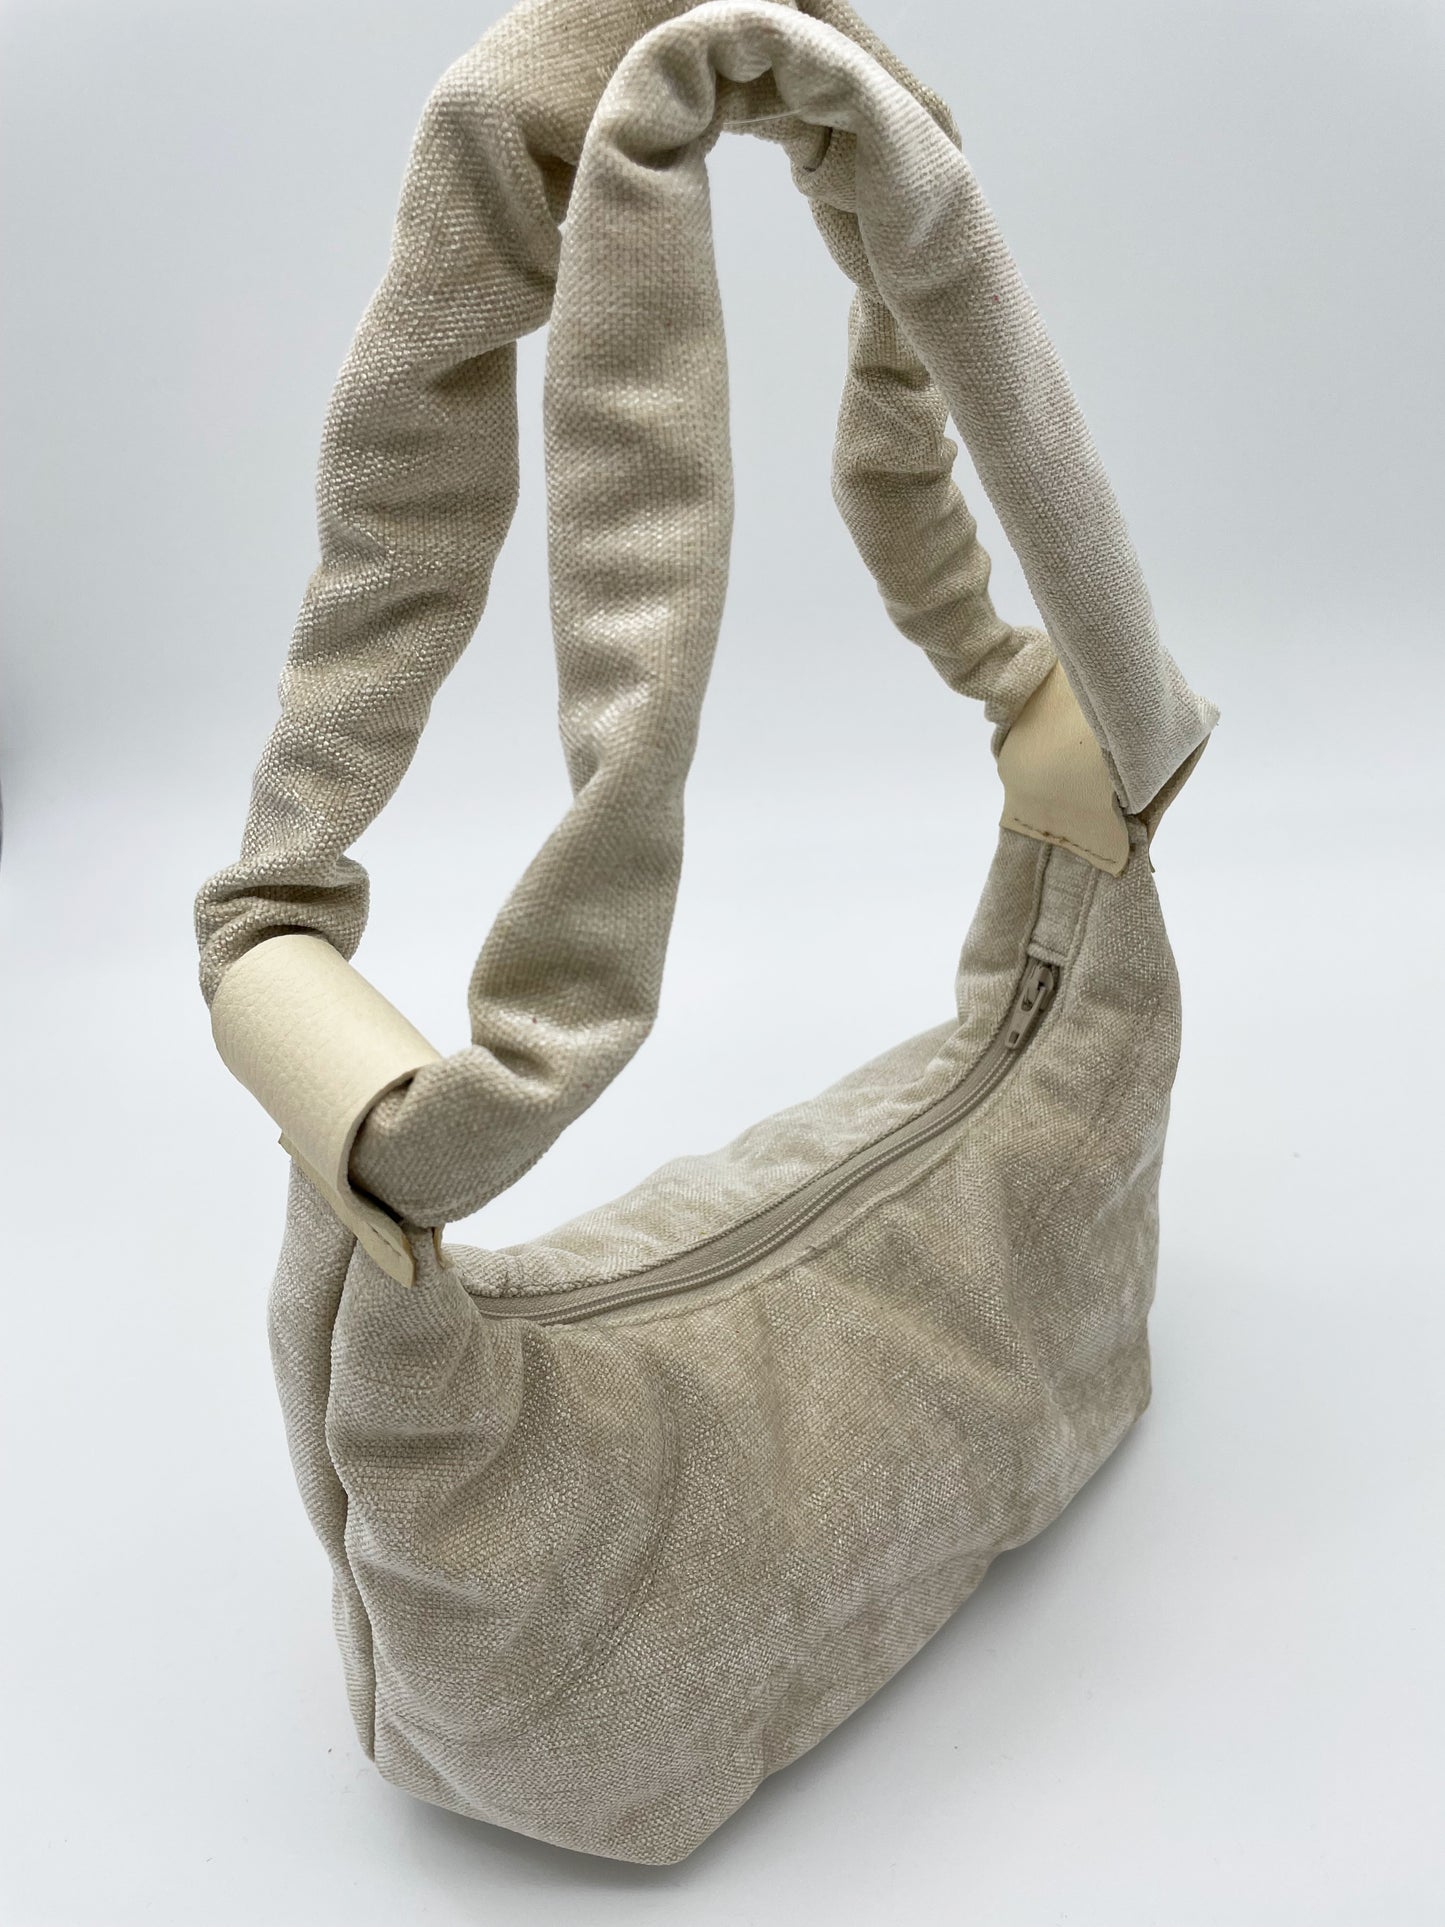 upcycling bag scrunched handle beige olive leather zipper handmade sculptural design